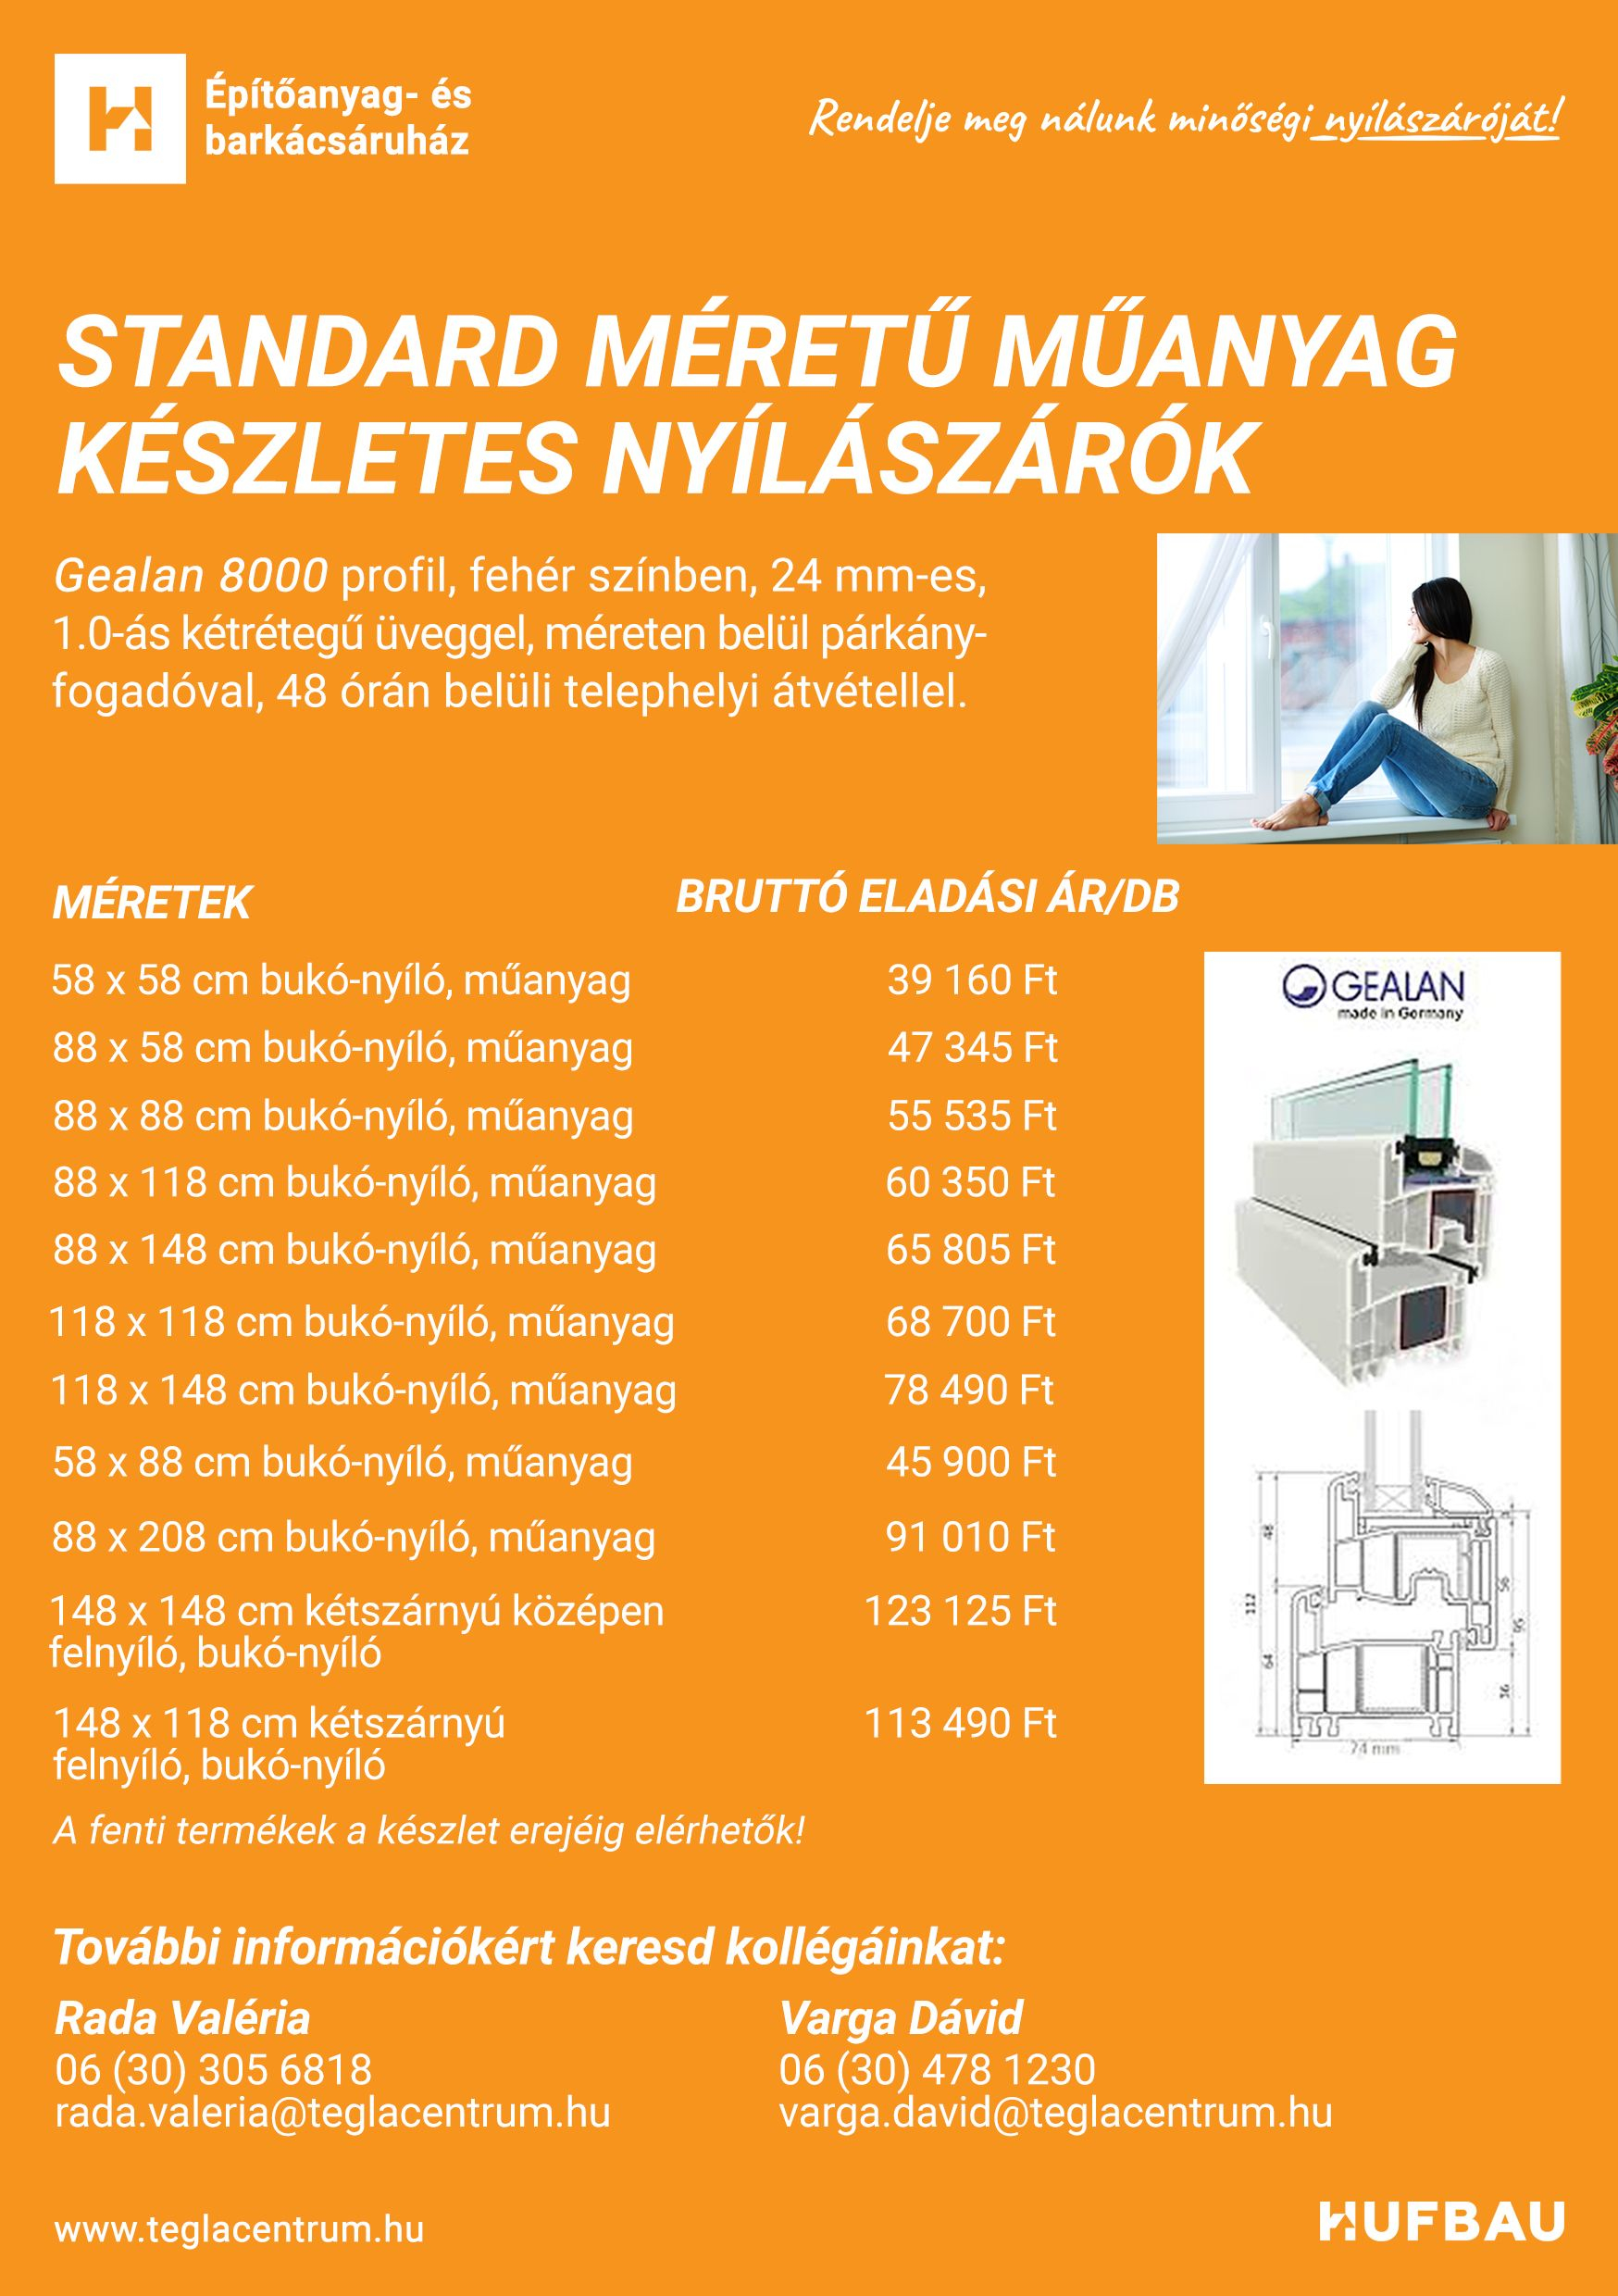 Pécs - Standard méretű műanyag nyílászárók - Ajtó, ablak, redőny, szúnyogháló - Tanácsadás, ajánlatkérés, információk, árak